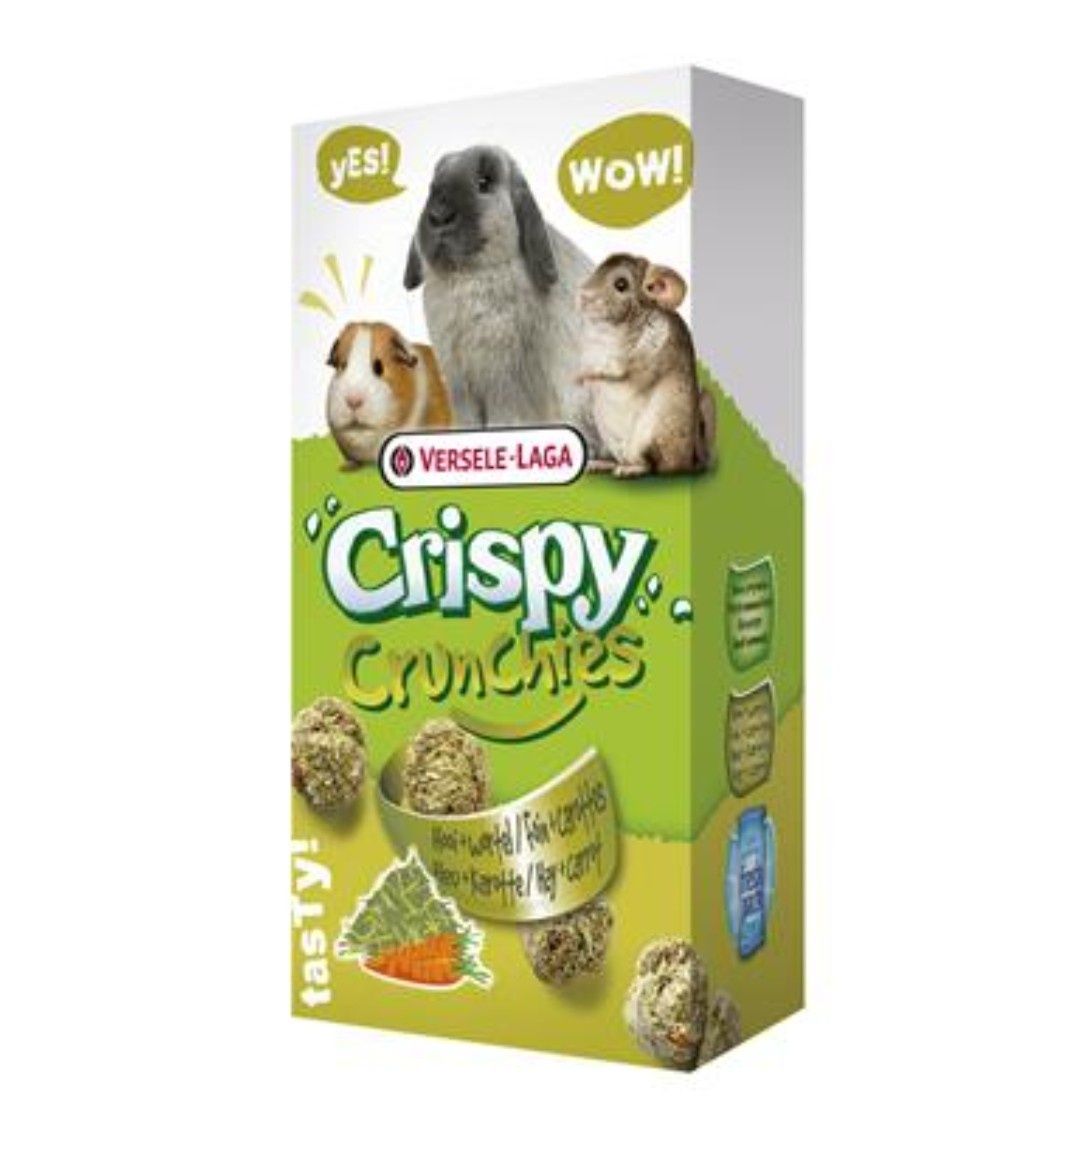 VL-Crispy Crunchies Hay 75g - chrupiący przysmak z siankiem dla królik